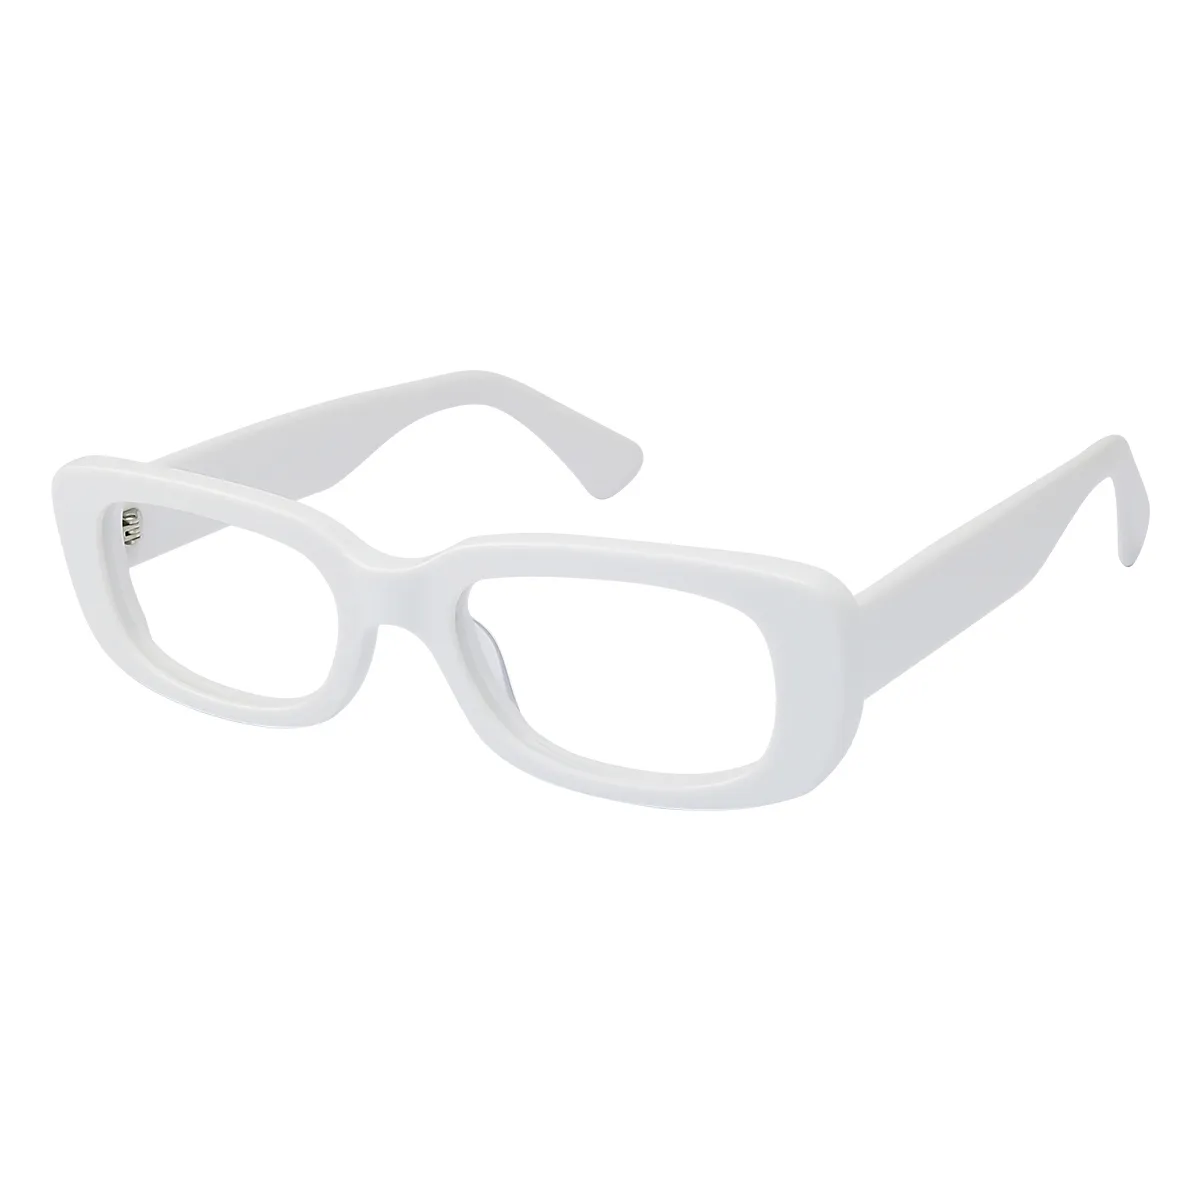 Dieppe - Rectangle White Glasses for Men & Women - EFE